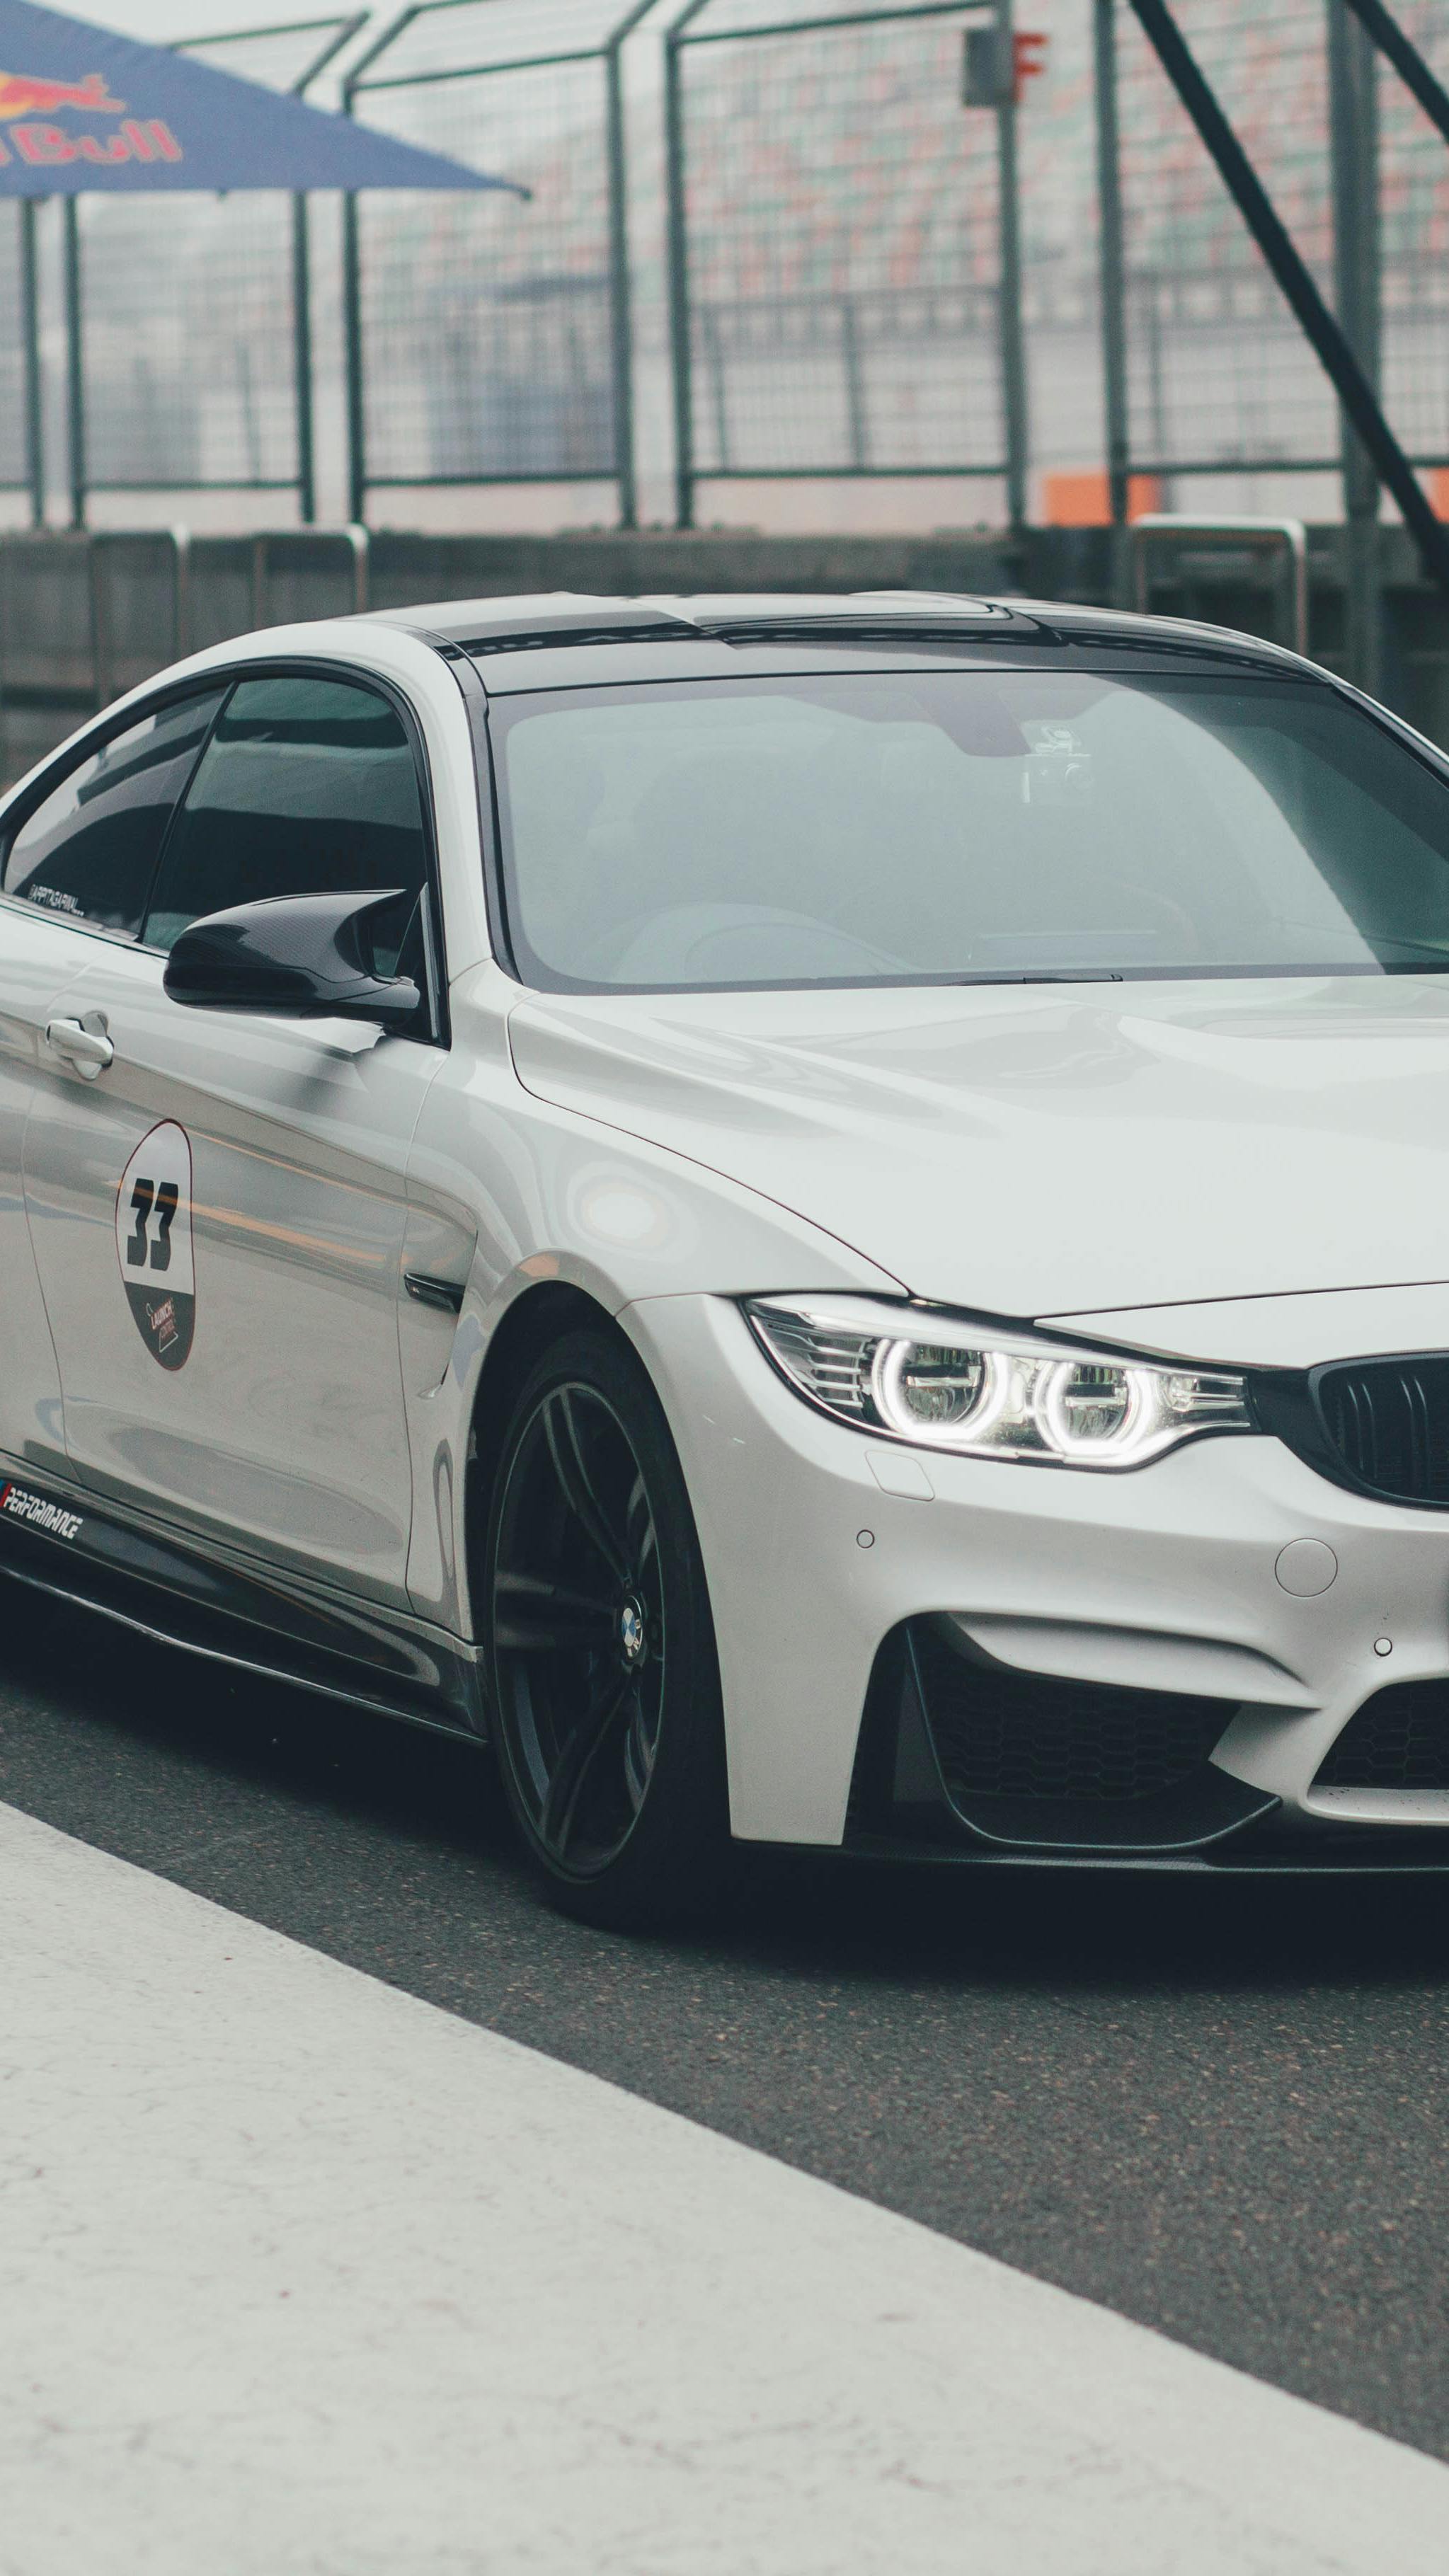 Top hình nền BMW đẹp dòng xe siêu sang của Đức  TRẦN HƯNG ĐẠO